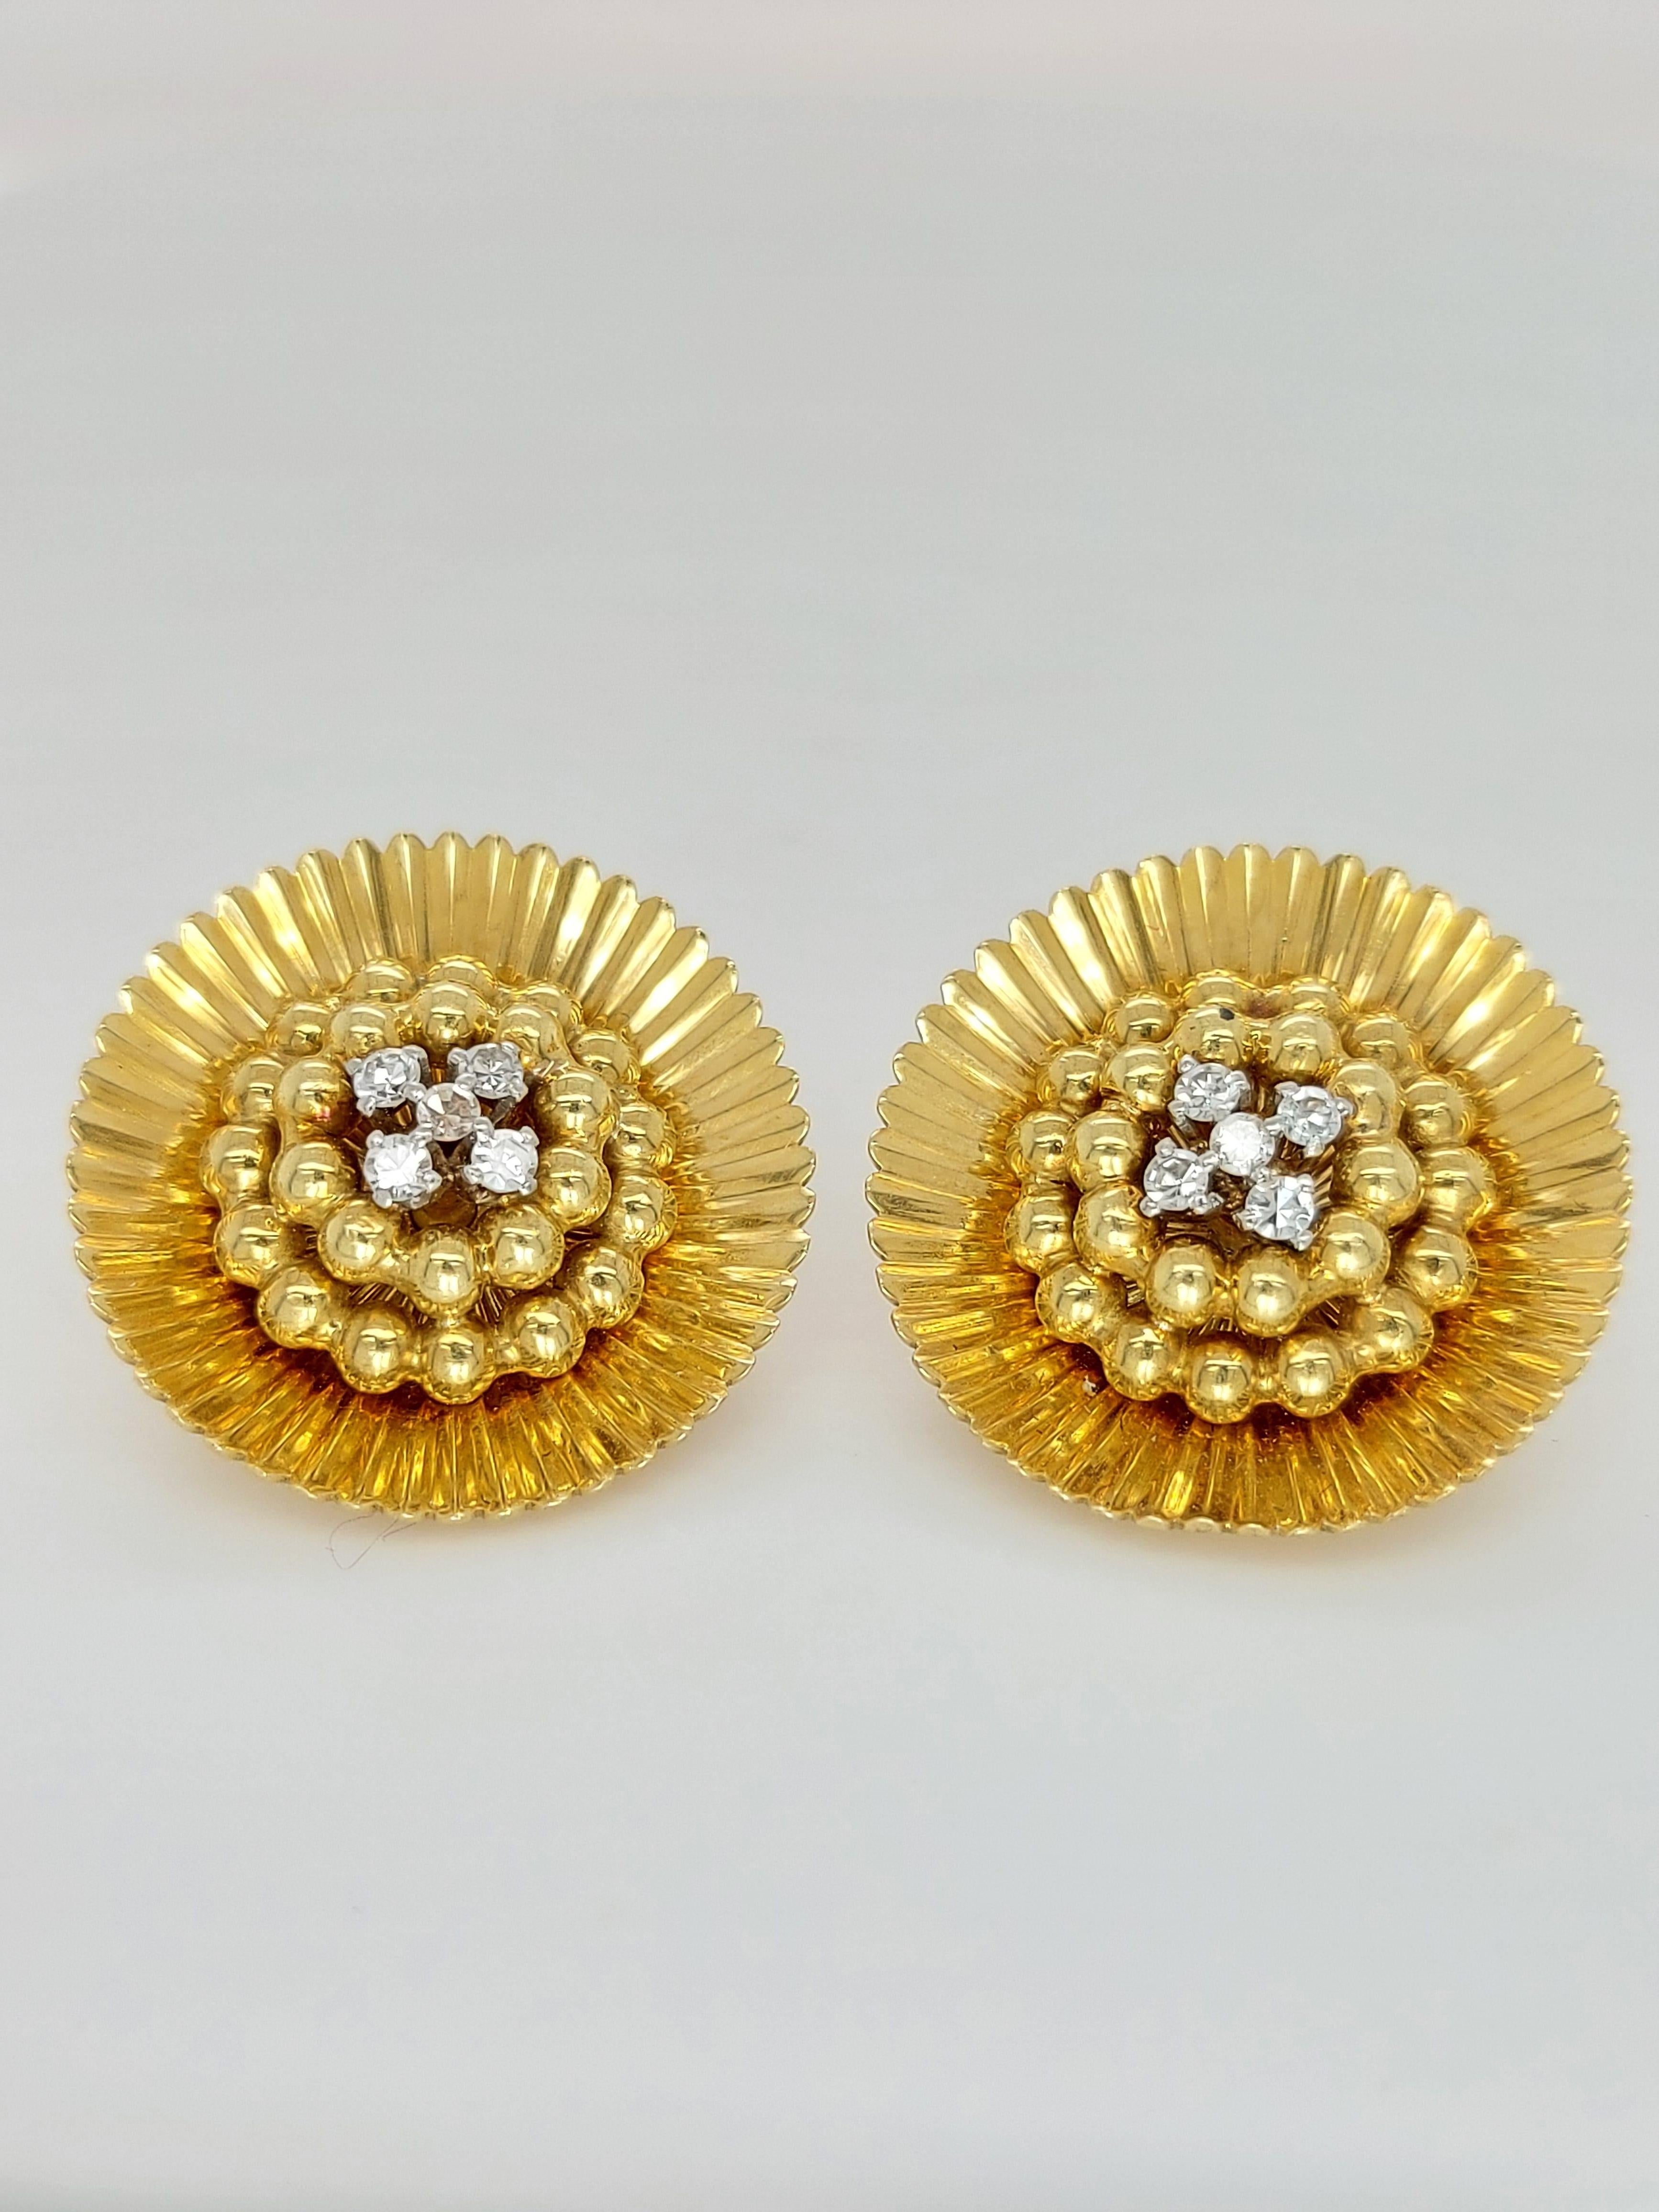 18 Karat Yellow Gold Clip-On Flower Shape Earrings 8/8 Cut Diamonds 0.26 Carat For Sale 5